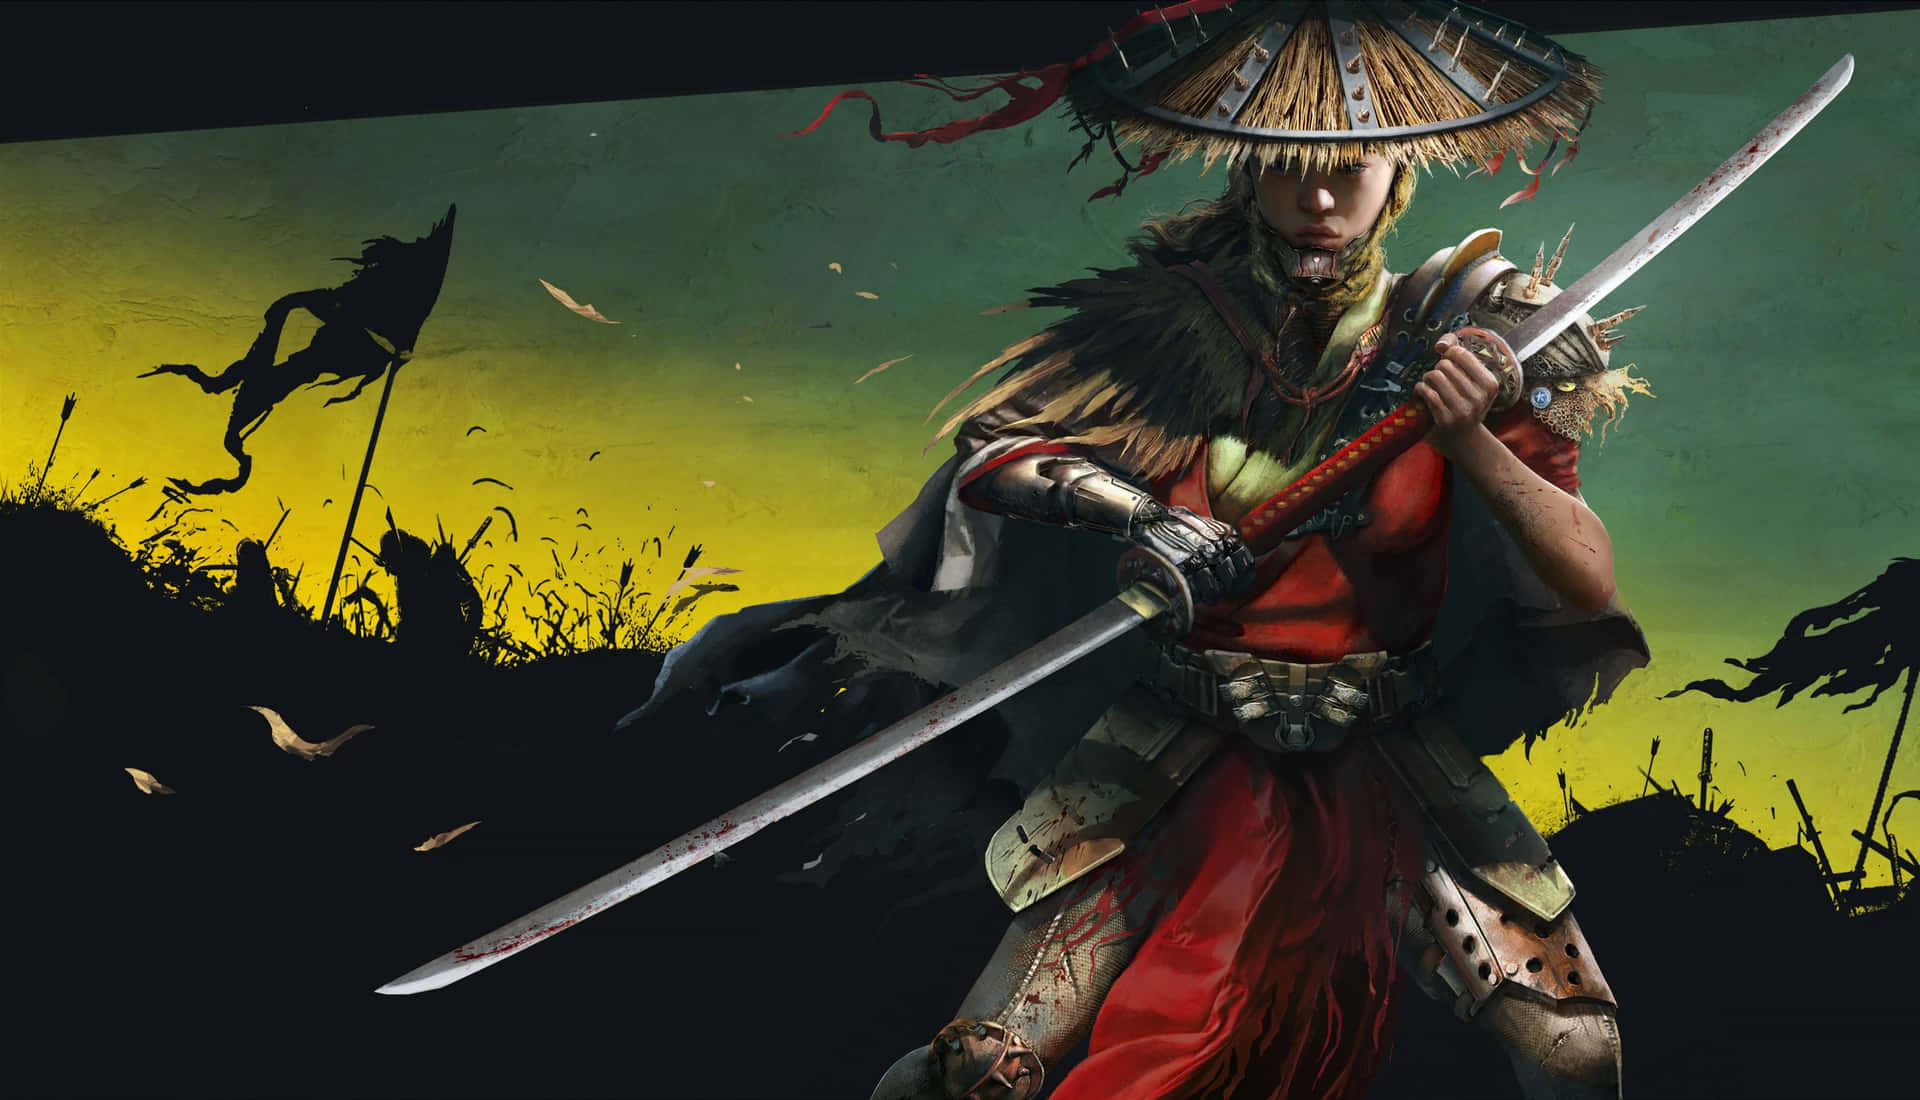 Enkvinde Iført En Samuraj-kostume, Der Holder En Sværd.